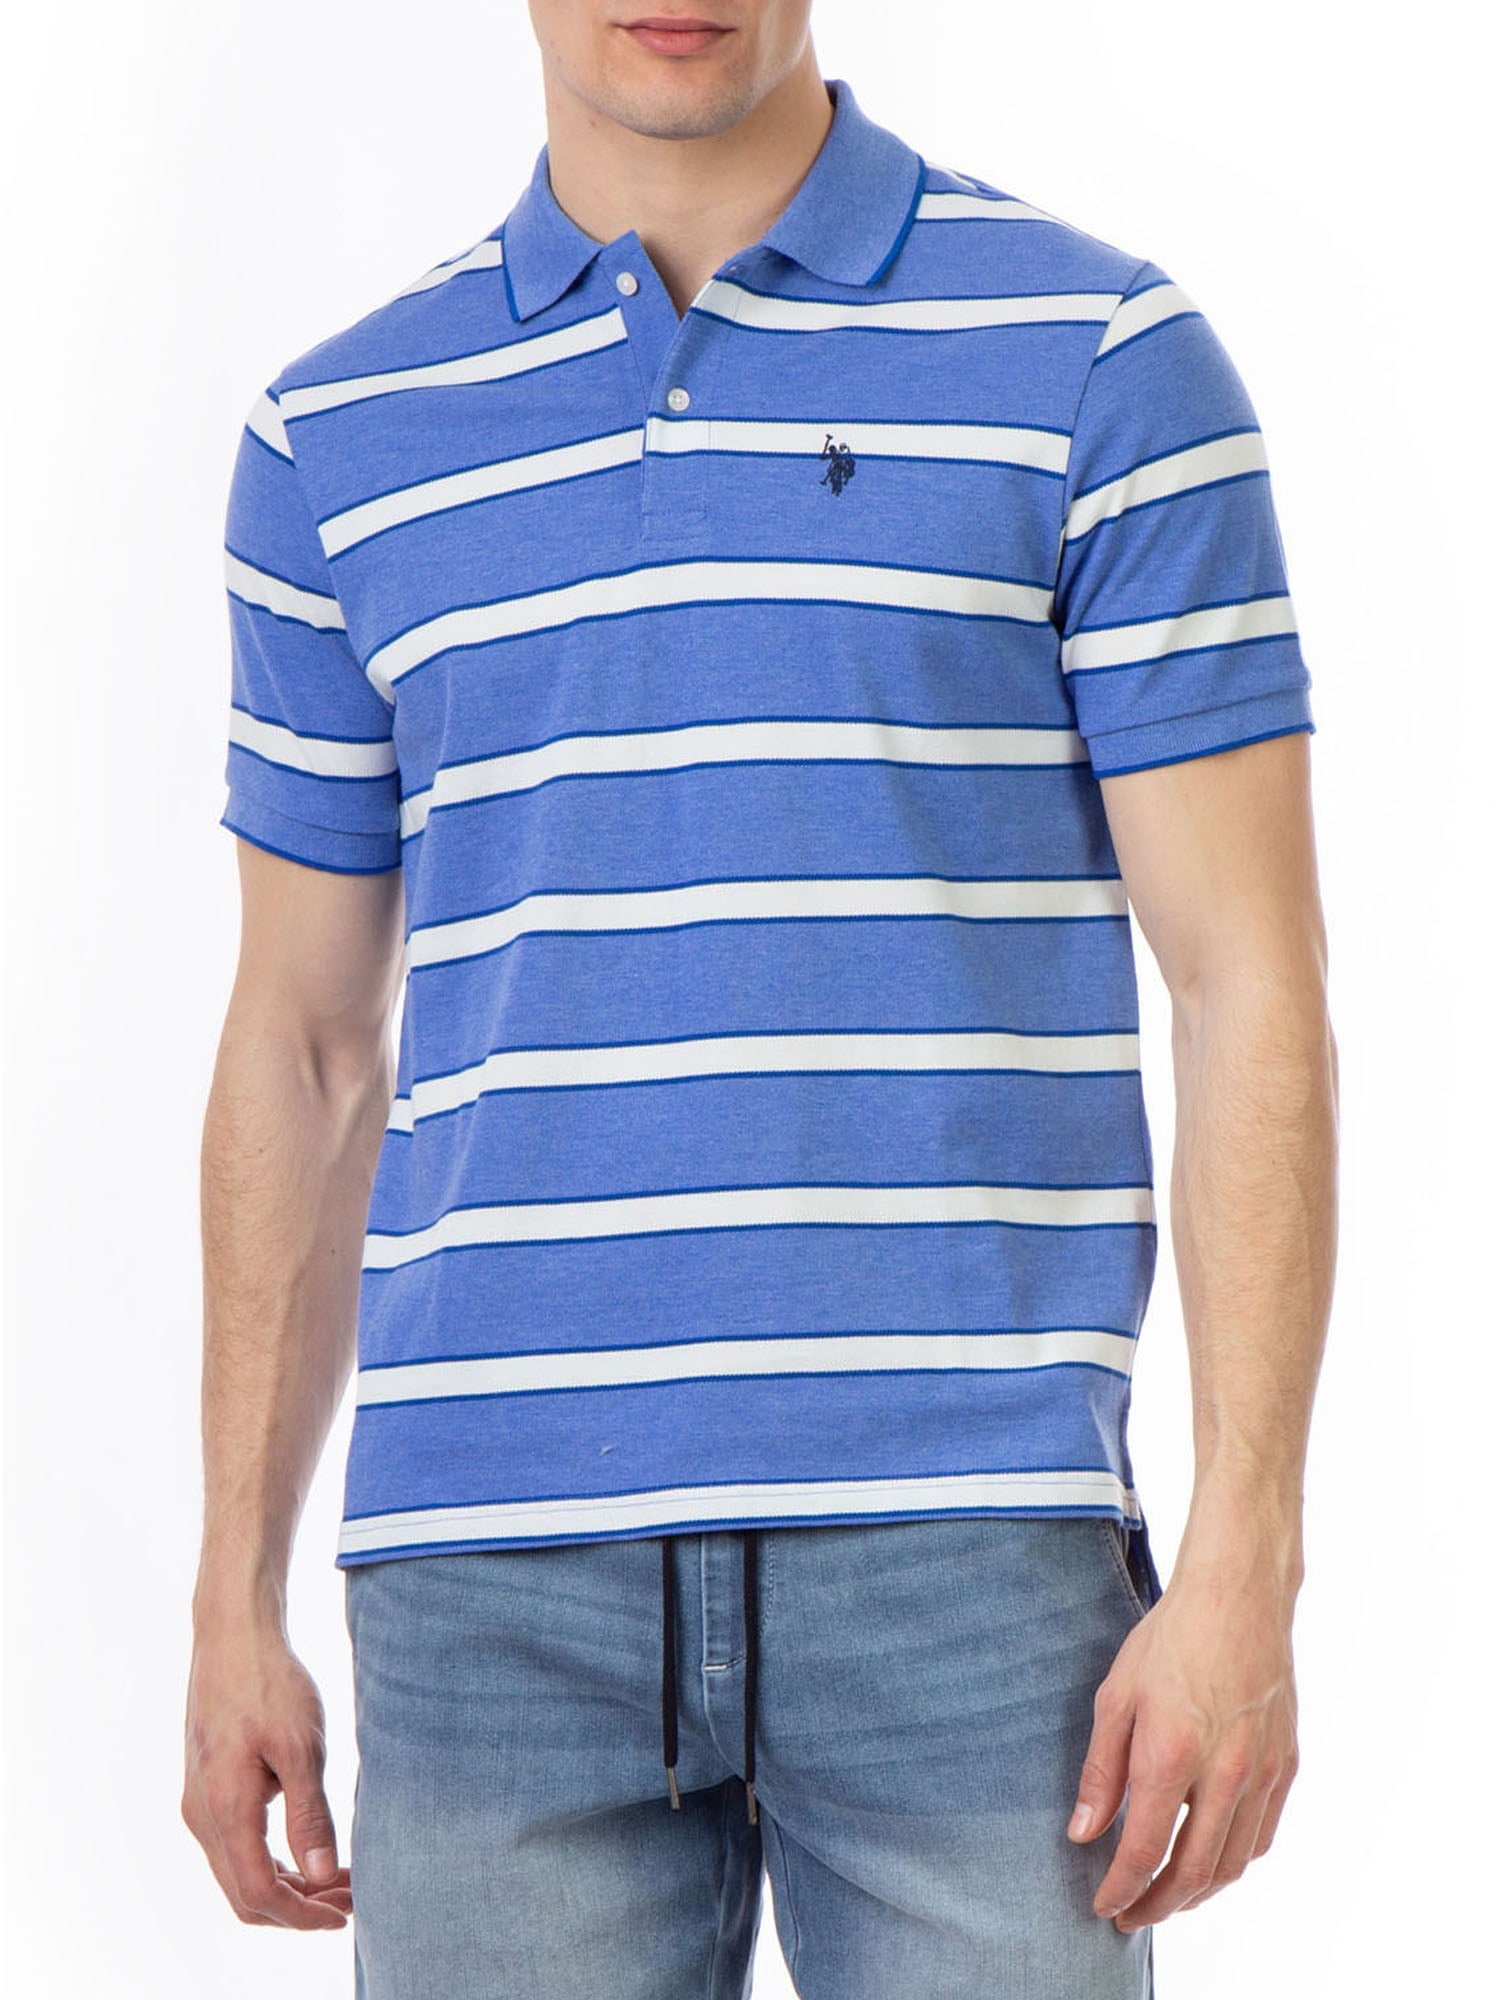 U.S. Polo Assn. Men's Striped Pique Polo Shirt